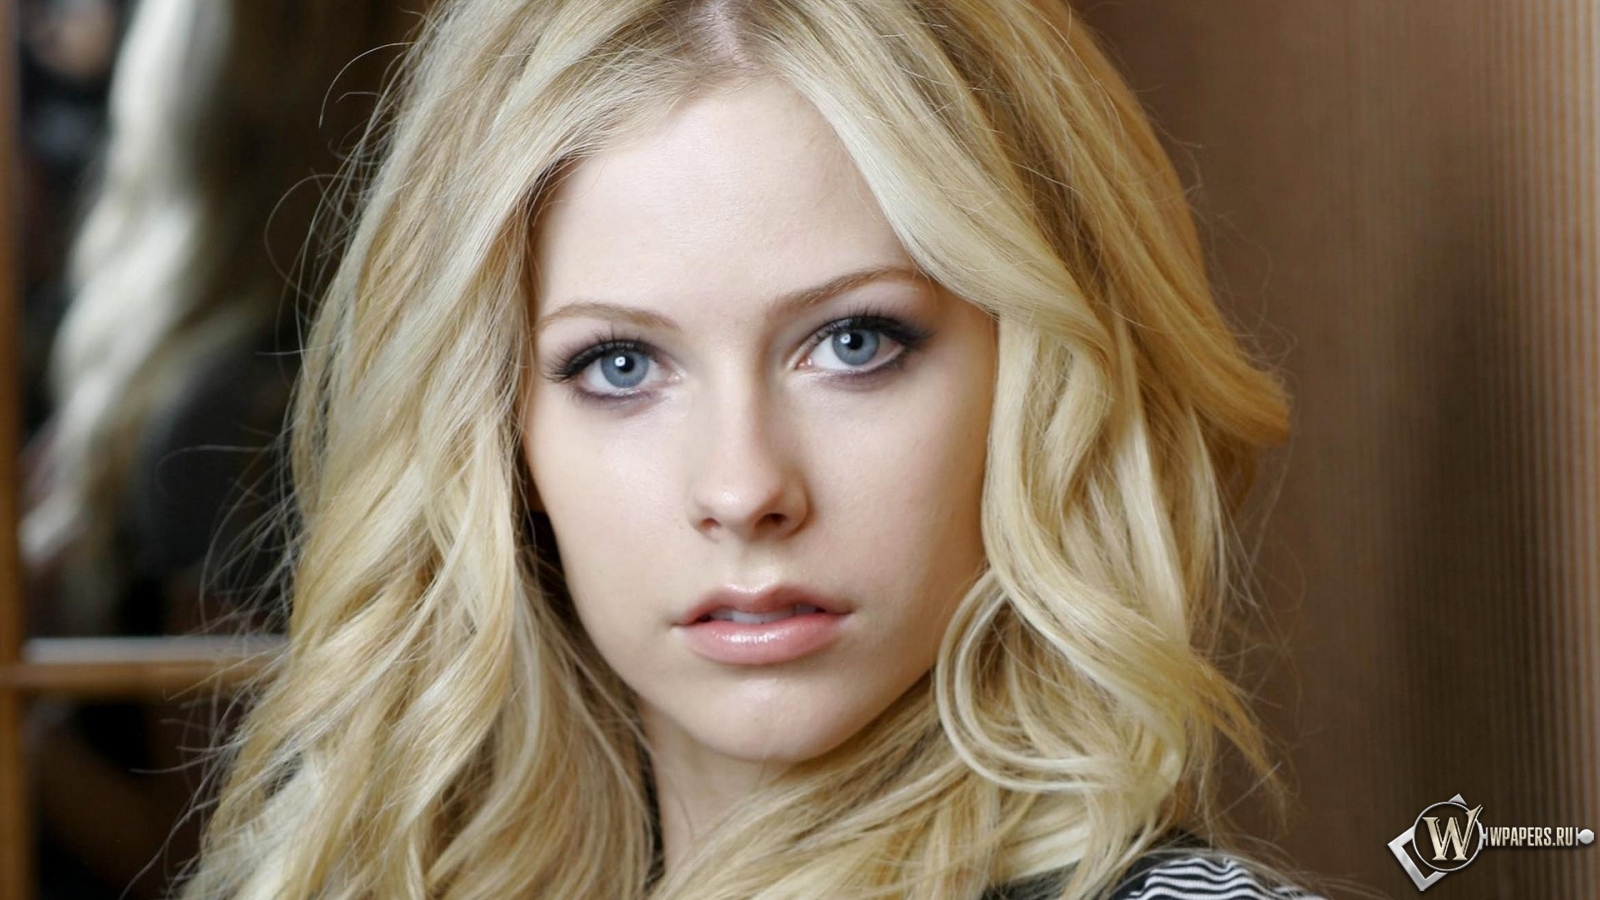 Avril Lavigne 1600x900